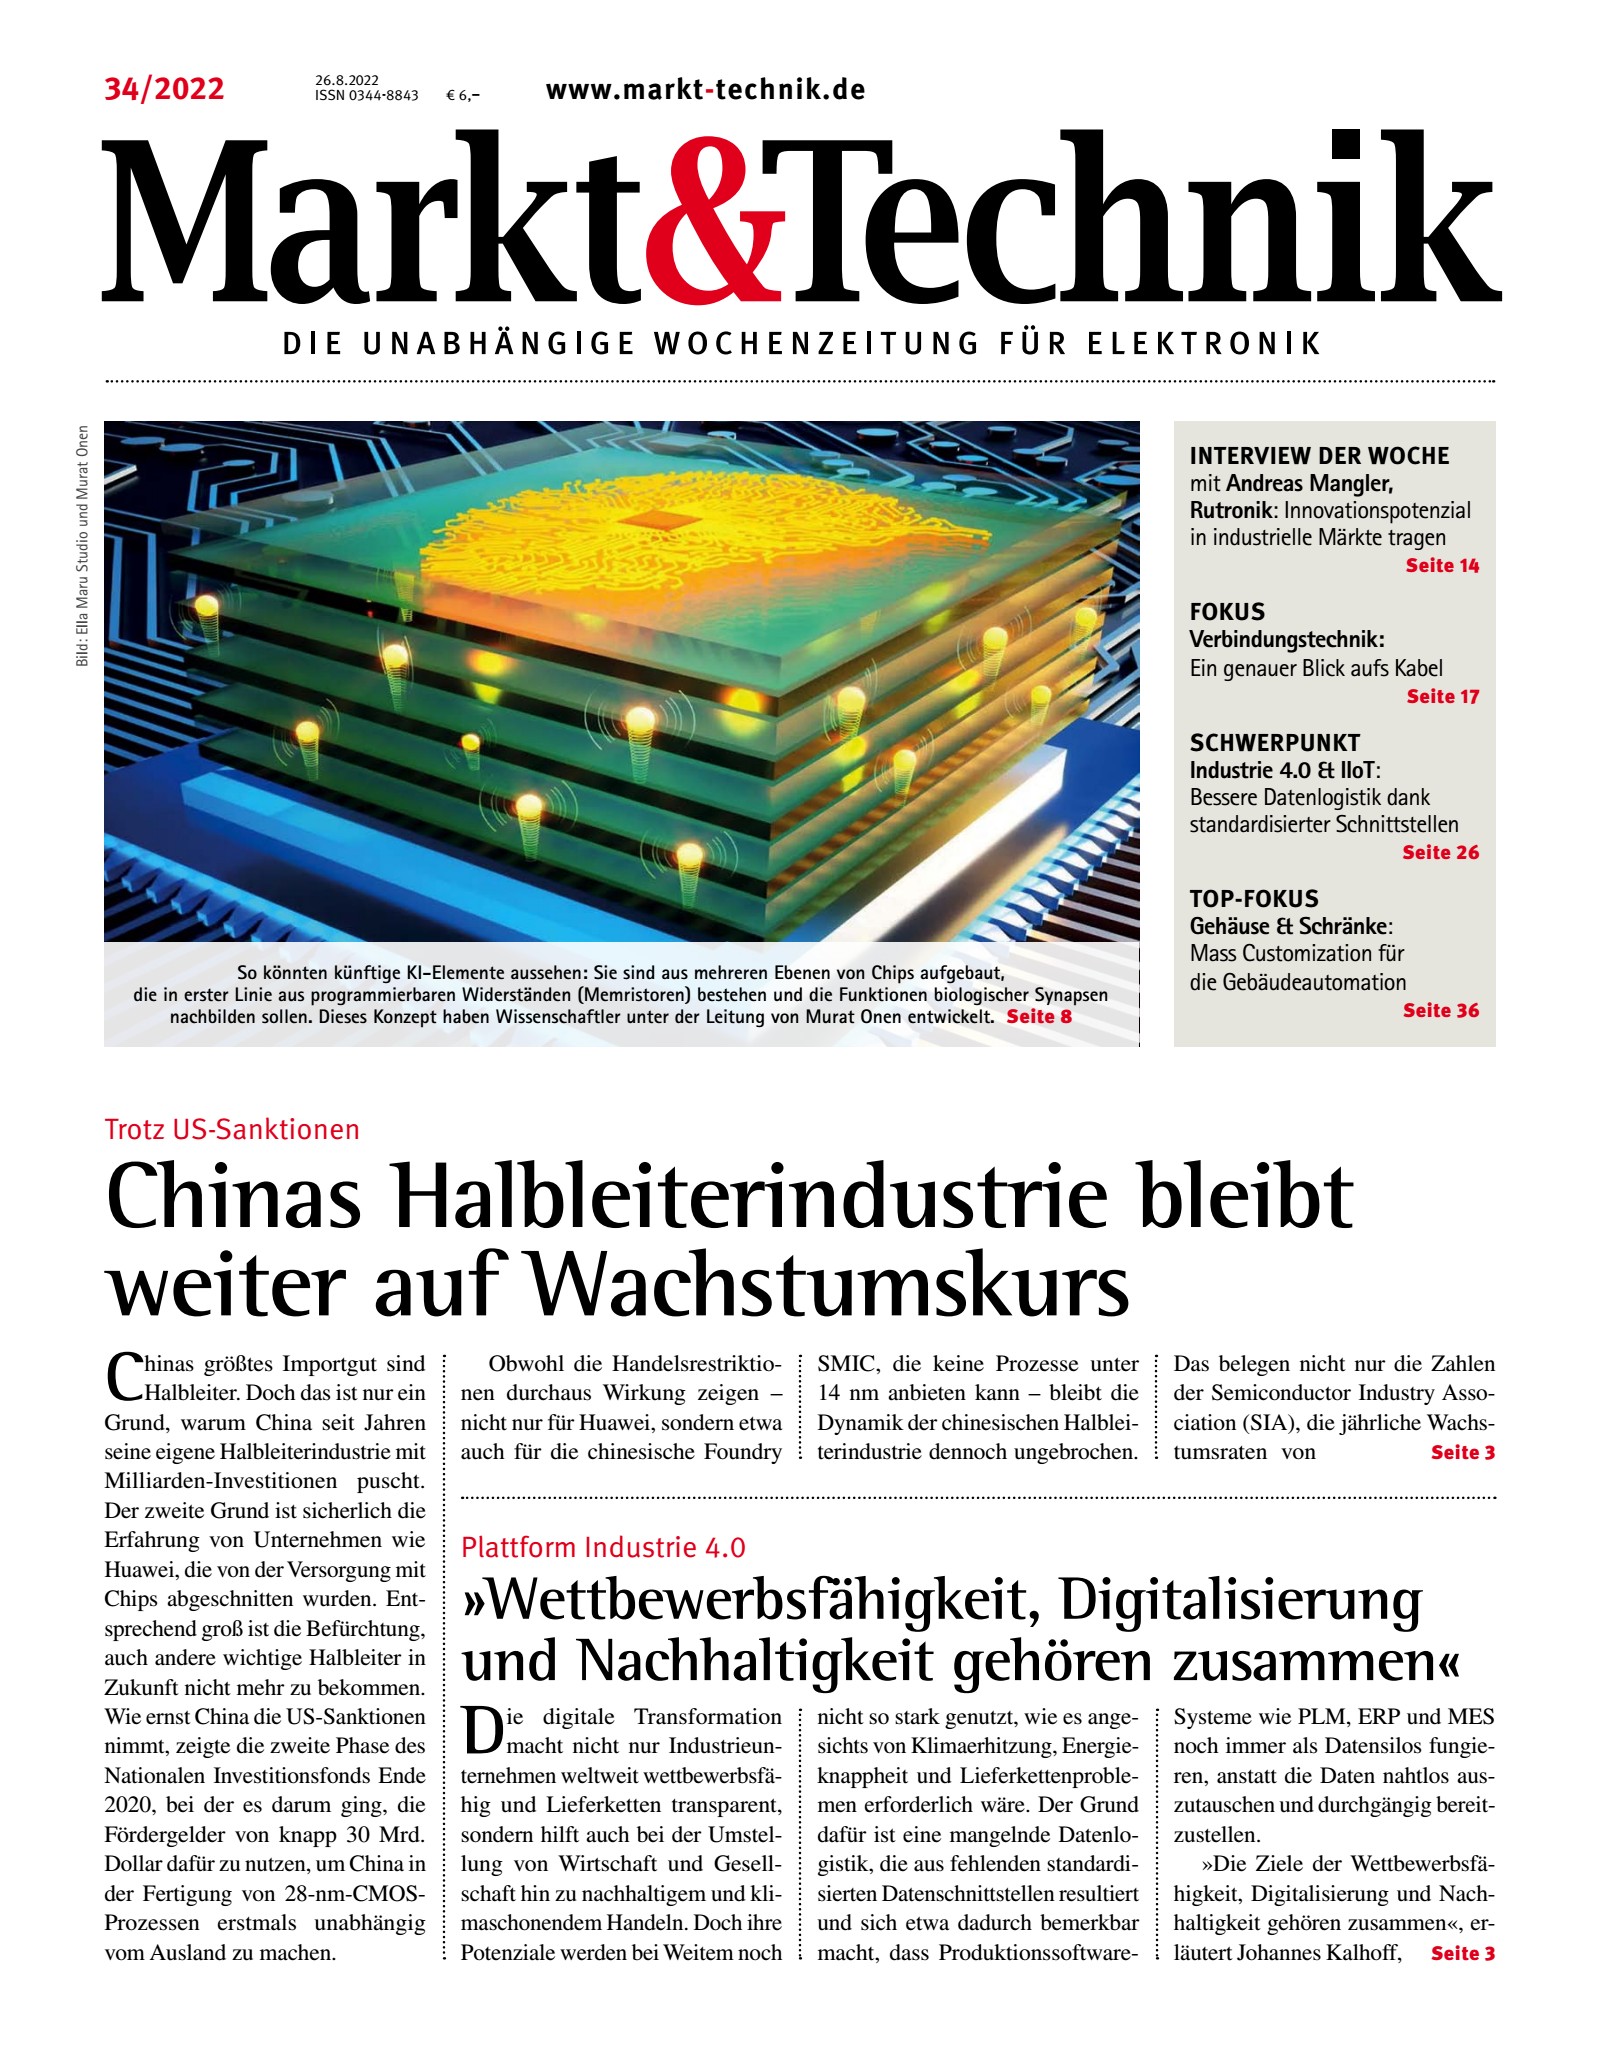 Markt&Technik 34/2022 Digital